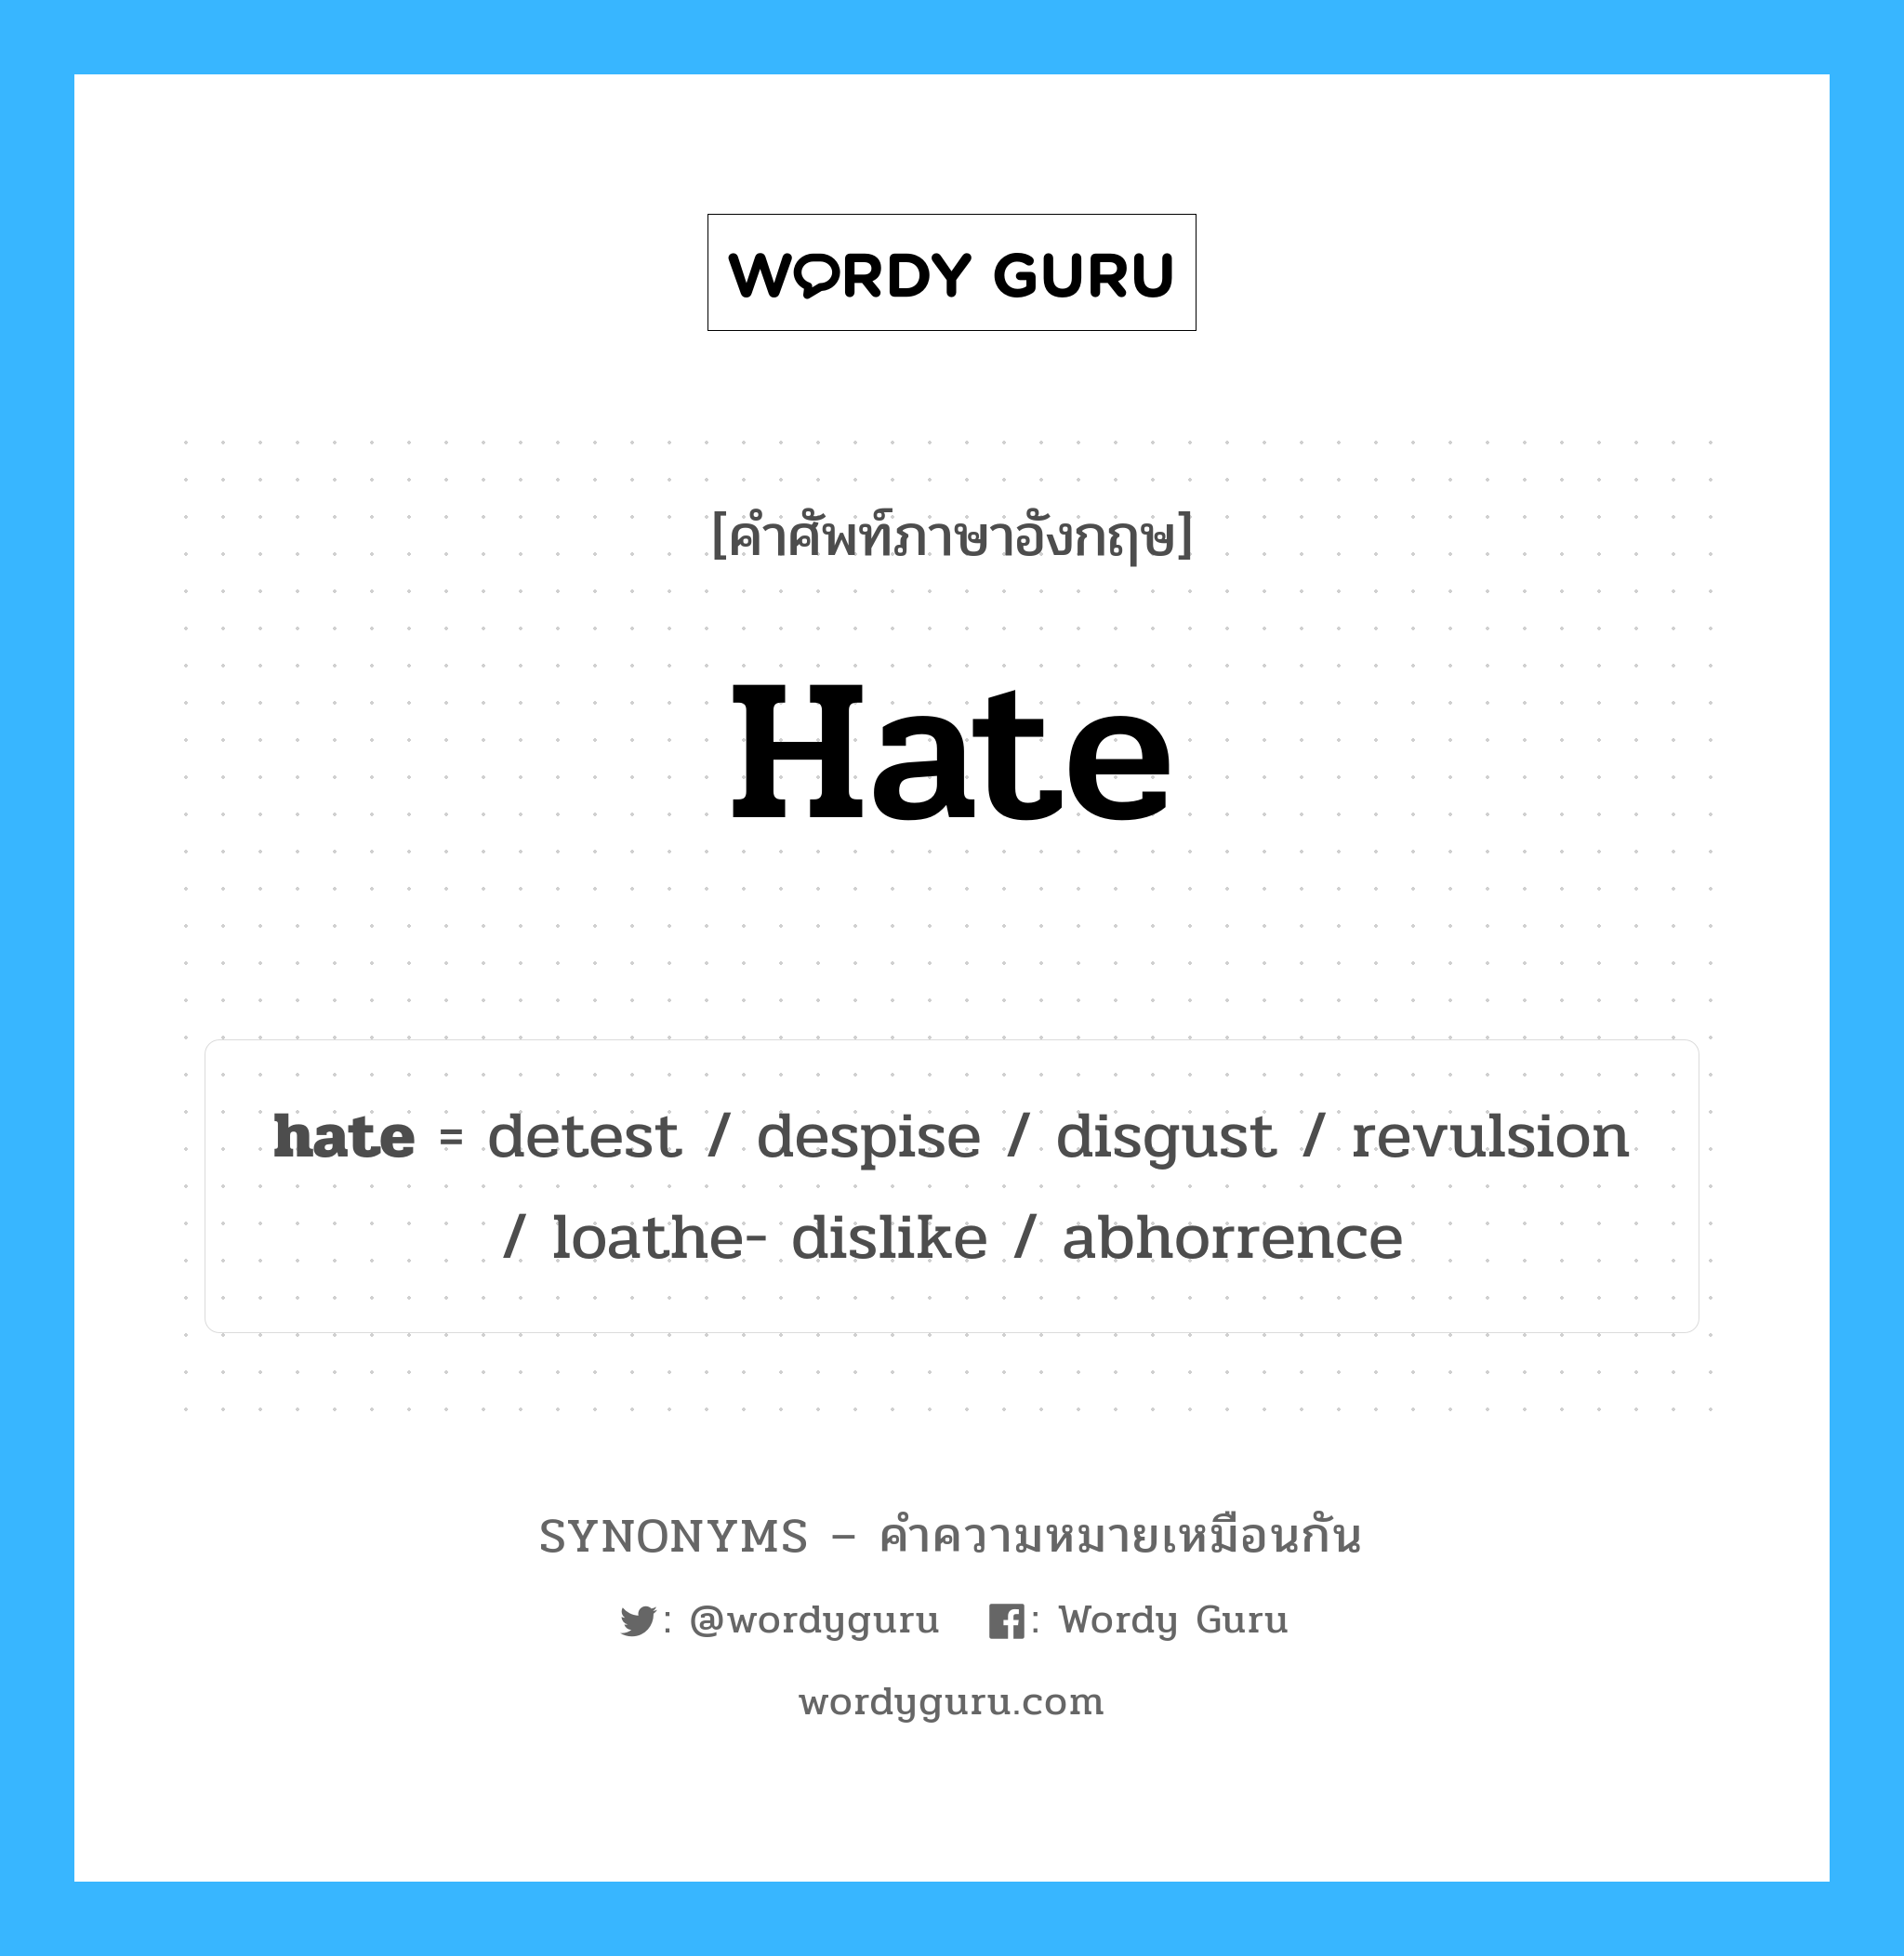 hate เป็นหนึ่งใน loathe- dislike และมีคำอื่น ๆ อีกดังนี้, คำศัพท์ภาษาอังกฤษ hate ความหมายคล้ายกันกับ loathe- dislike แปลว่า ไม่ชอบเกลียดชัง หมวด loathe- dislike